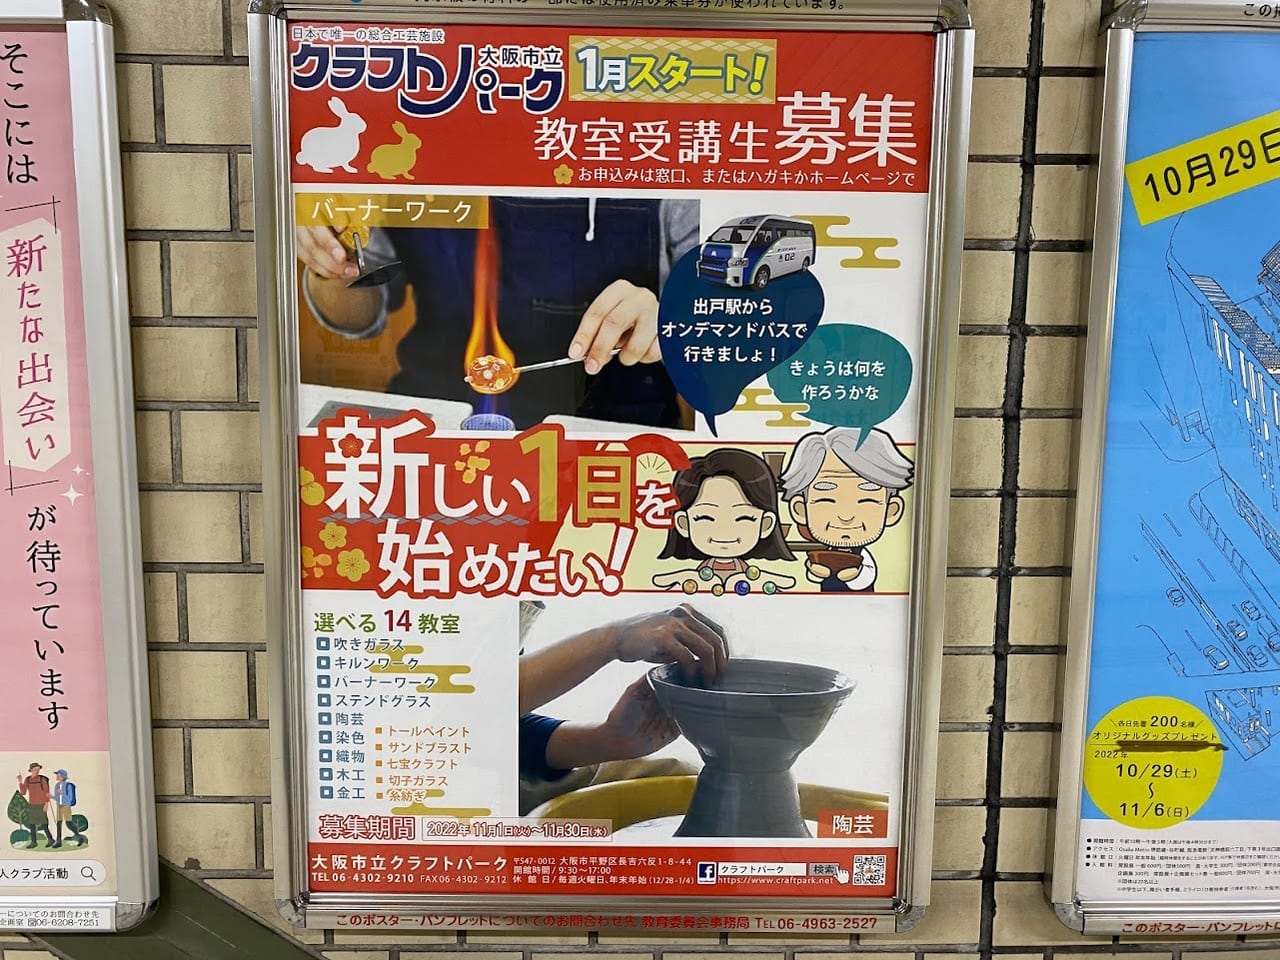 大阪市立クラフトパーク1月スタート教室受講生募集ポスター